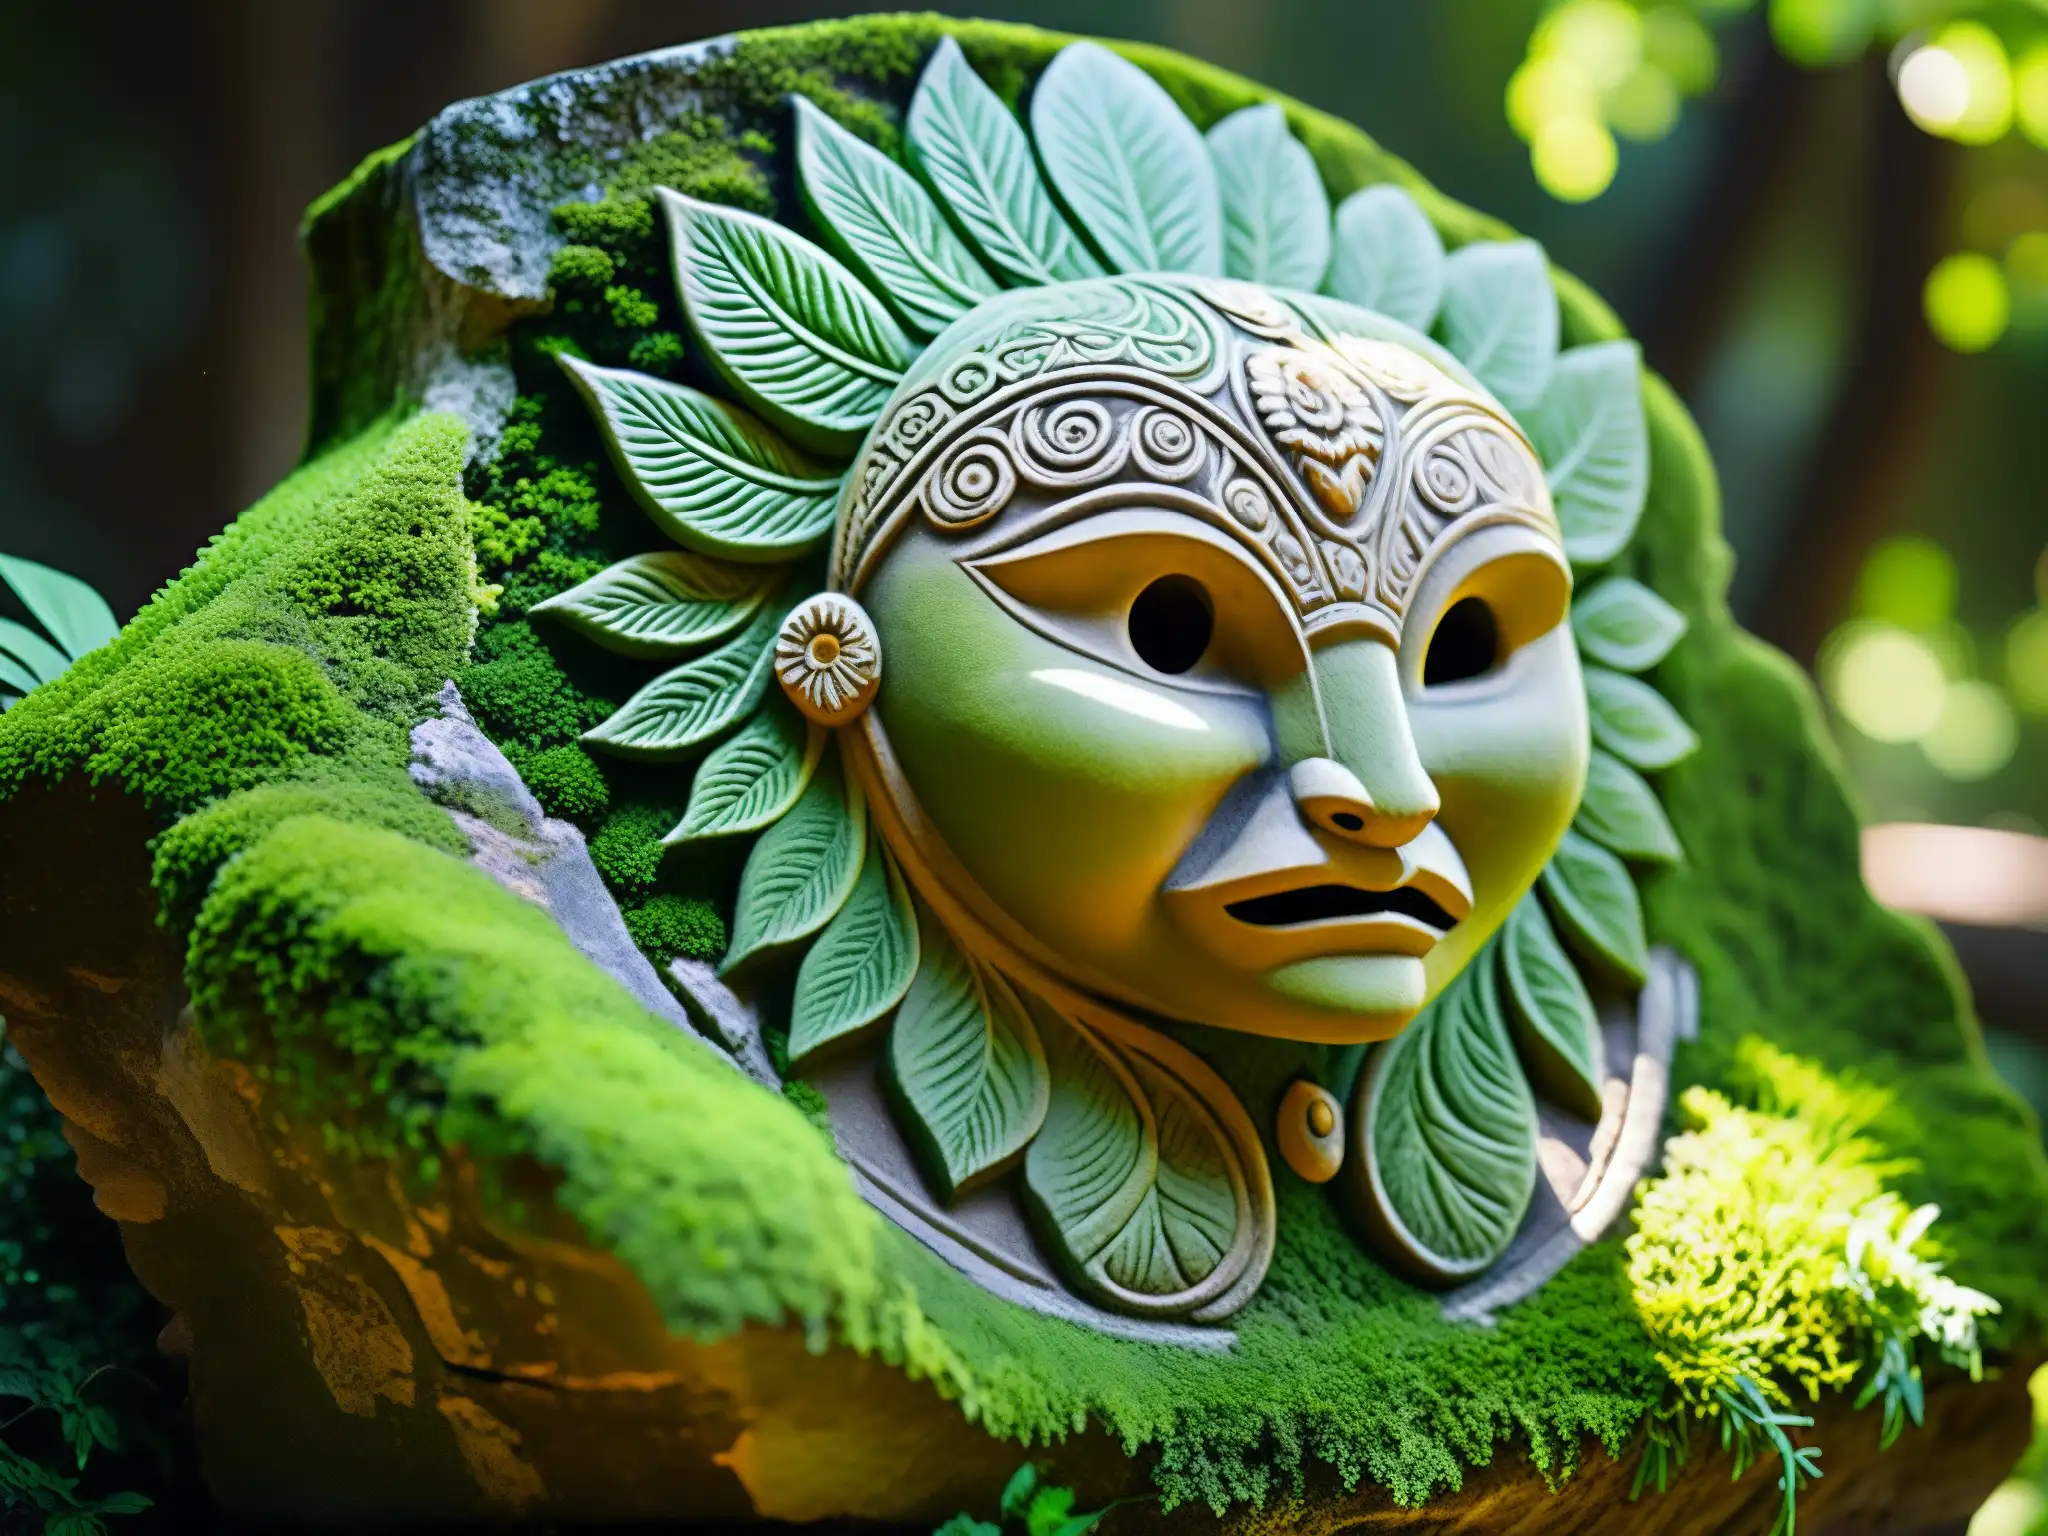 Detalle de antigua escultura de criatura mitológica mexicana cubierta de musgo, en medio de exuberante vegetación